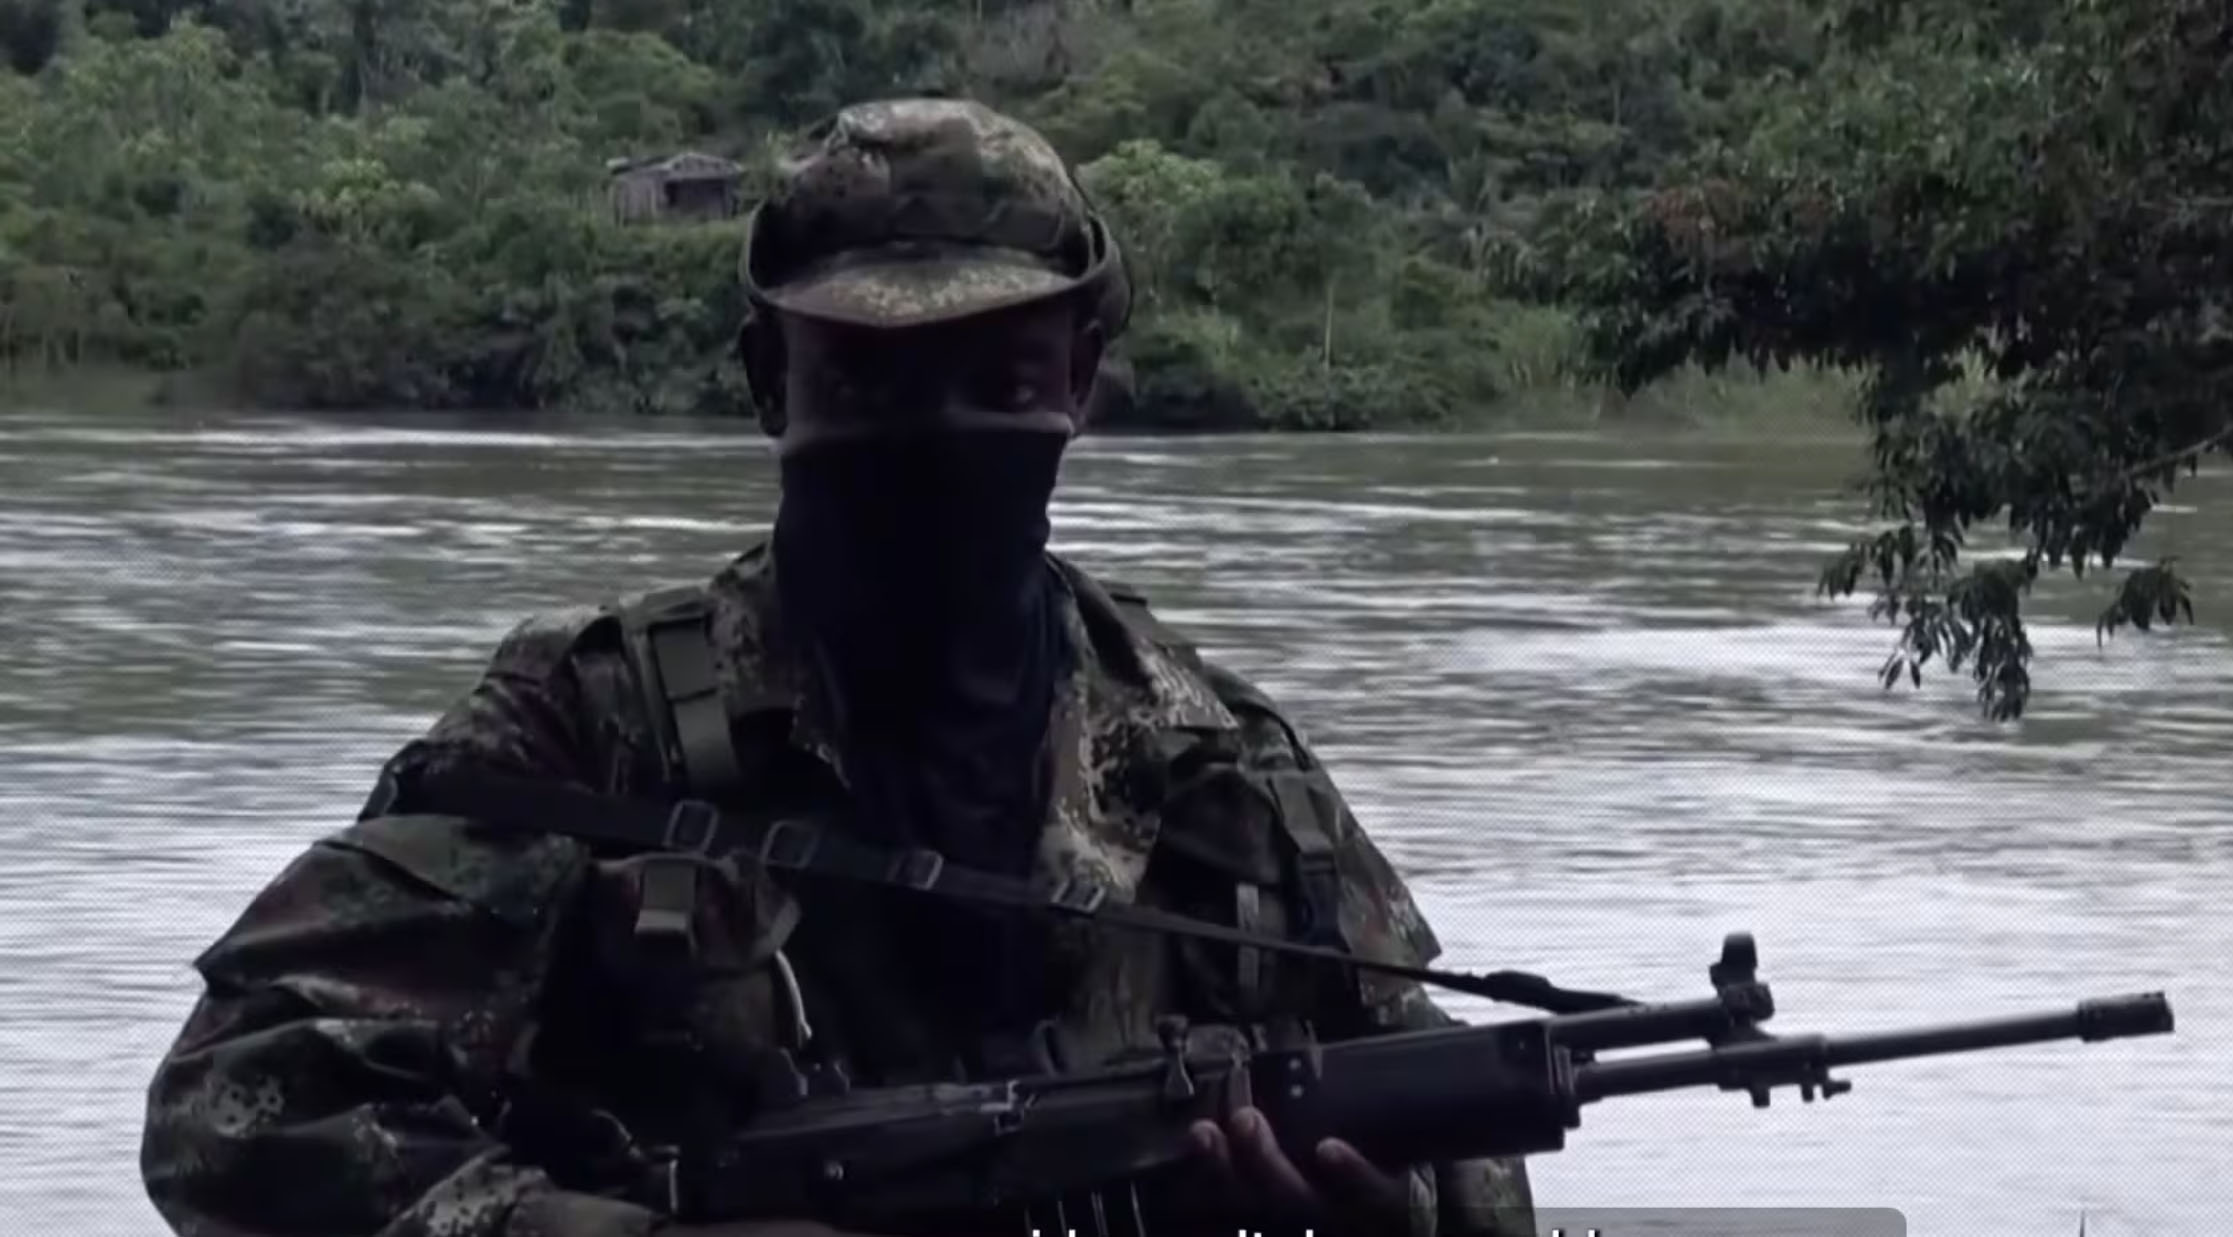 Niño colombiano sobrevive a un ataque de las FARC